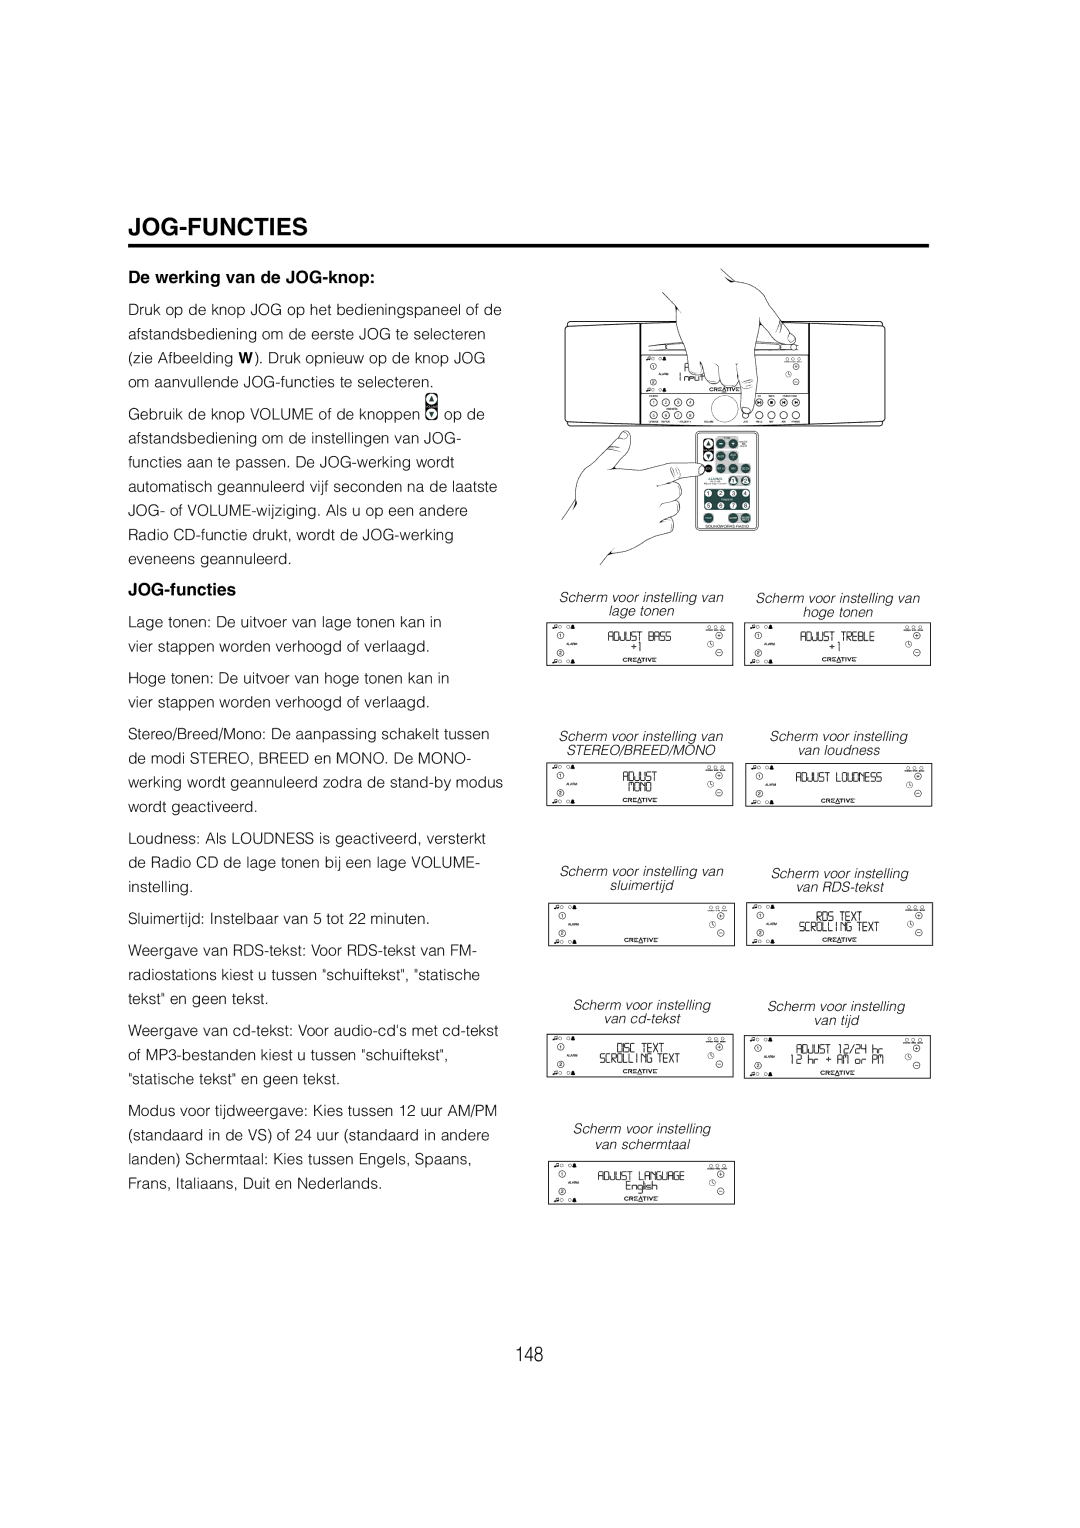 Cambridge SoundWorks C174RCNB user manual Jog-Functies, De werking van de JOG-knop, JOG-functies 